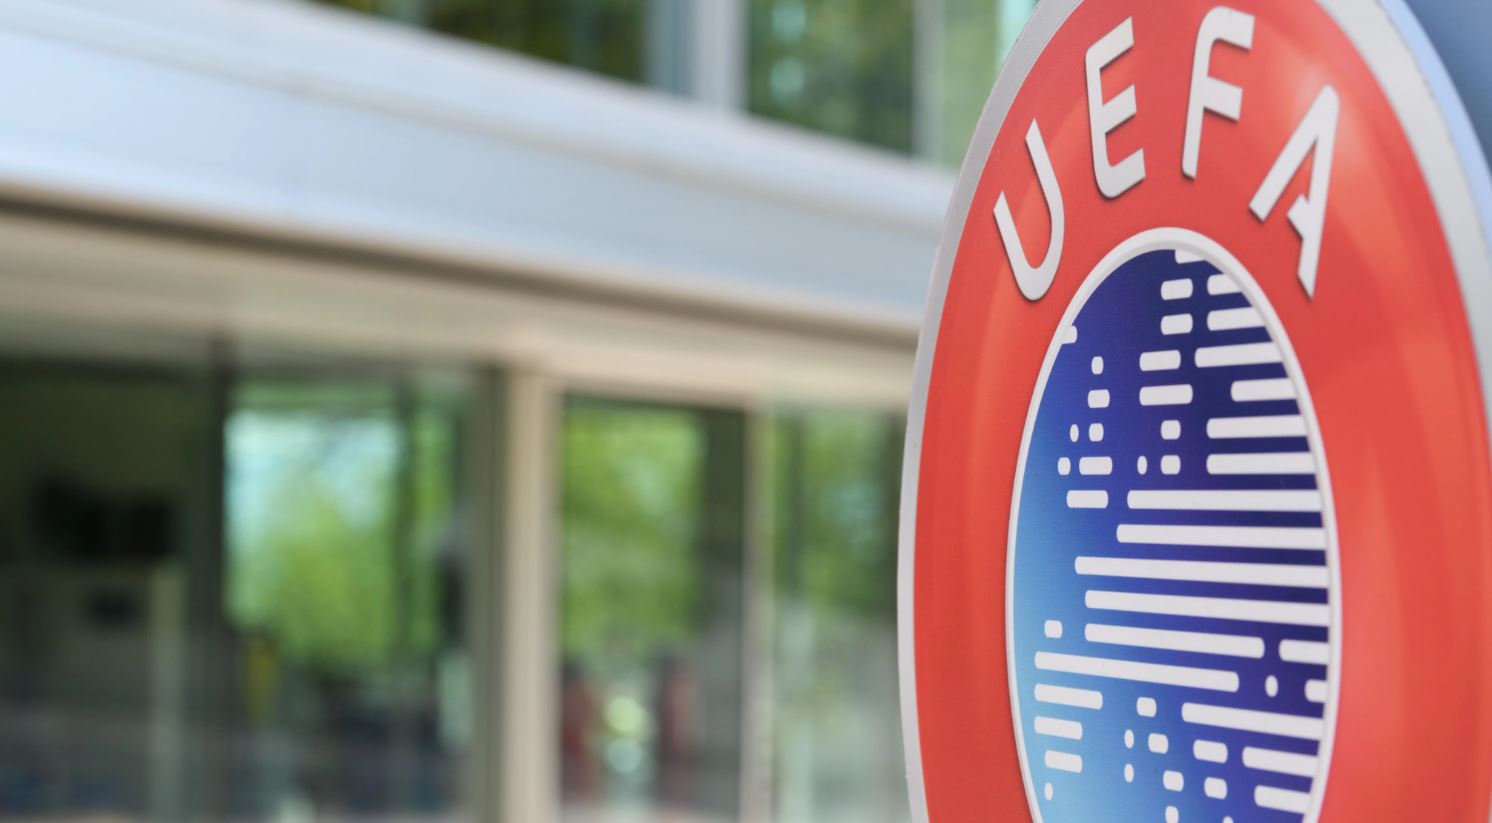 УЕФА отстранил российские клубы от участия в еврокубках